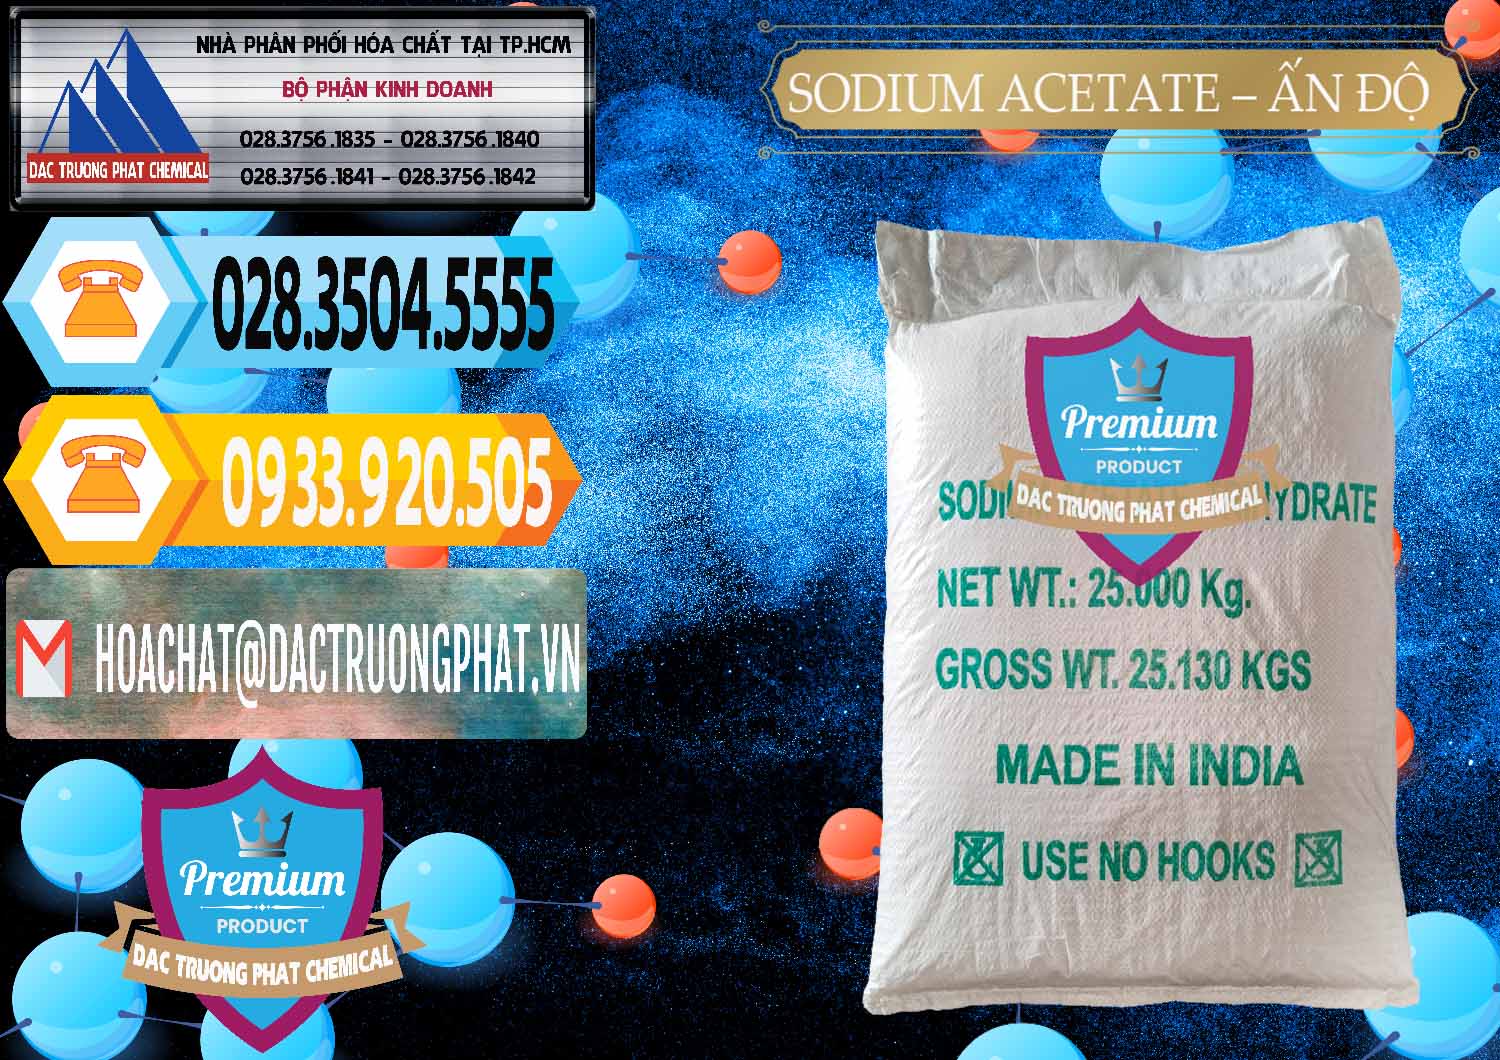 Cty cung ứng _ bán Sodium Acetate - Natri Acetate Ấn Độ India - 0133 - Chuyên kinh doanh - phân phối hóa chất tại TP.HCM - hoachattayrua.net